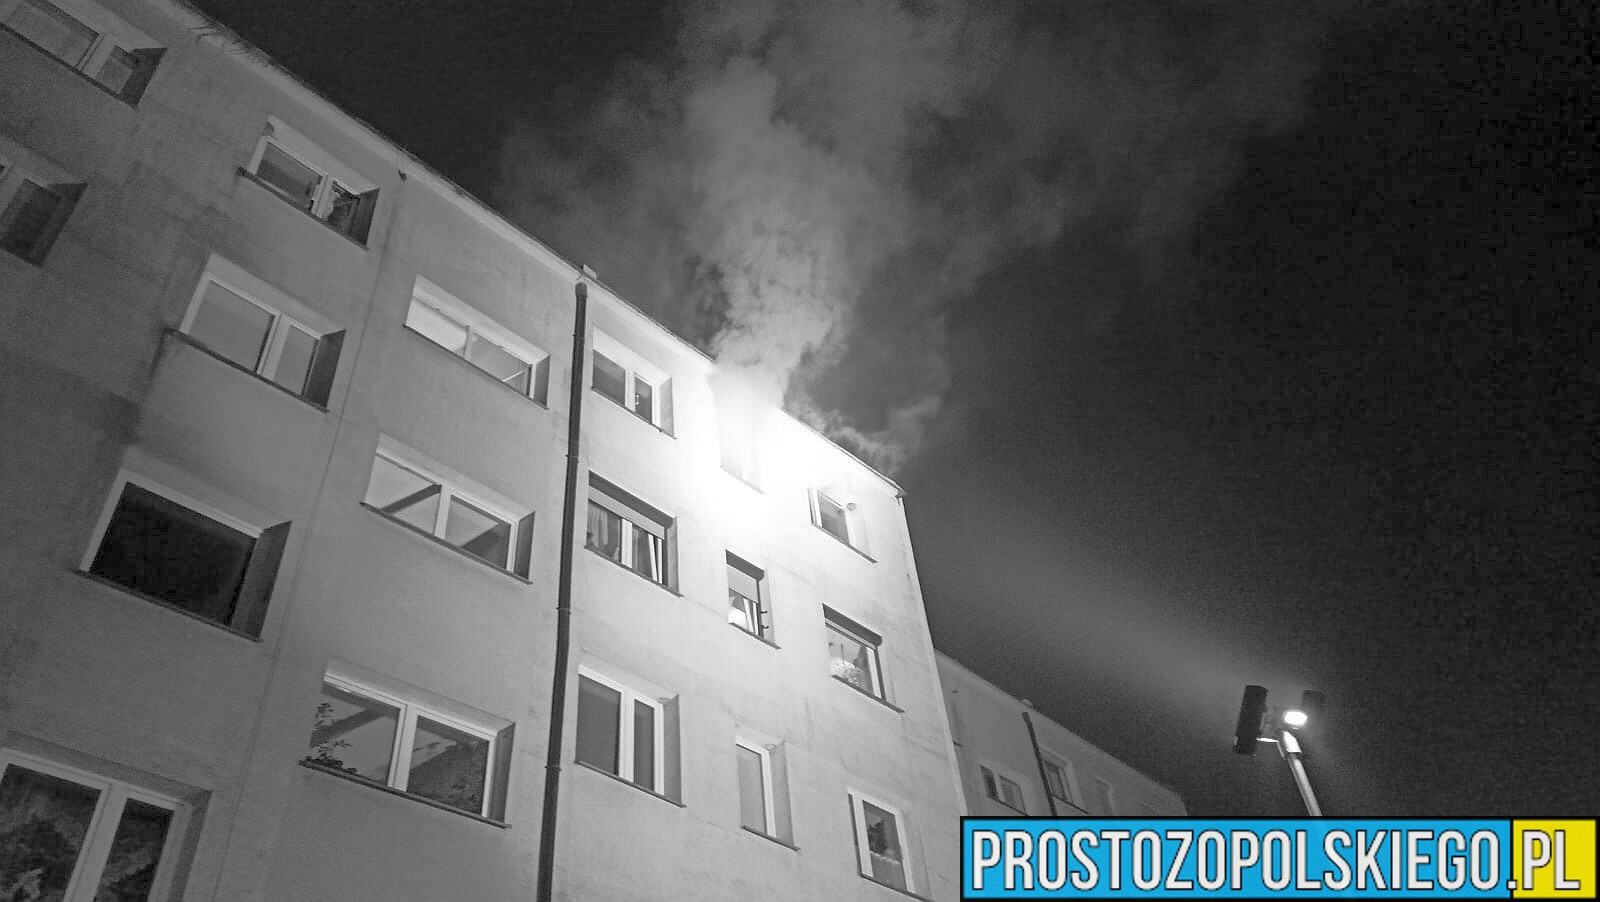 Tragiczny w skutkach pożar mieszkania w Krapkowicach. Nie żyje jedna osoba.